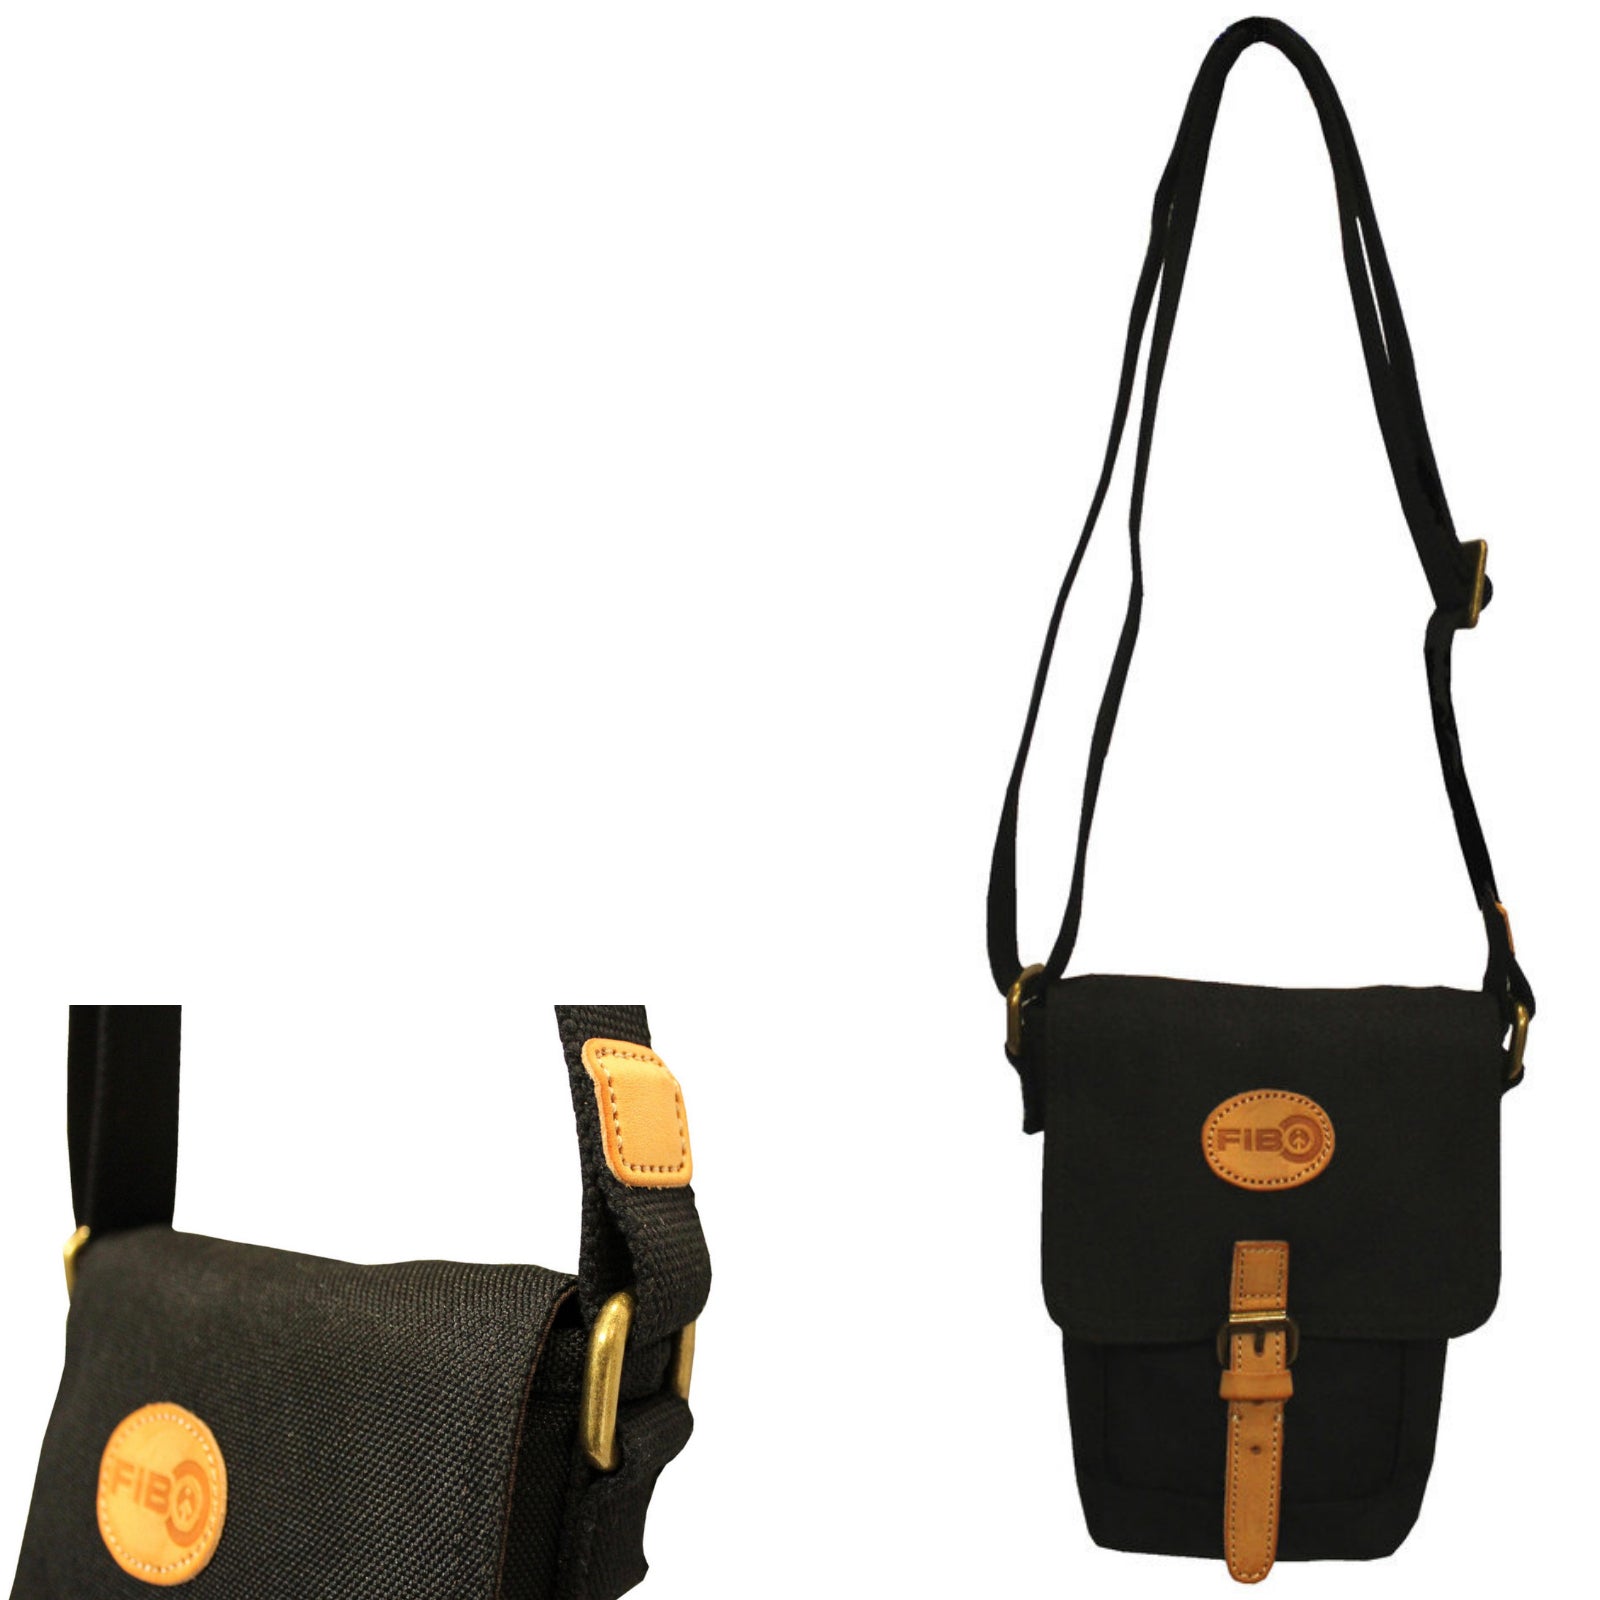 Water Resistant Small Shoulder Canvas Bag w Adjustable Shoulder Strap - Black